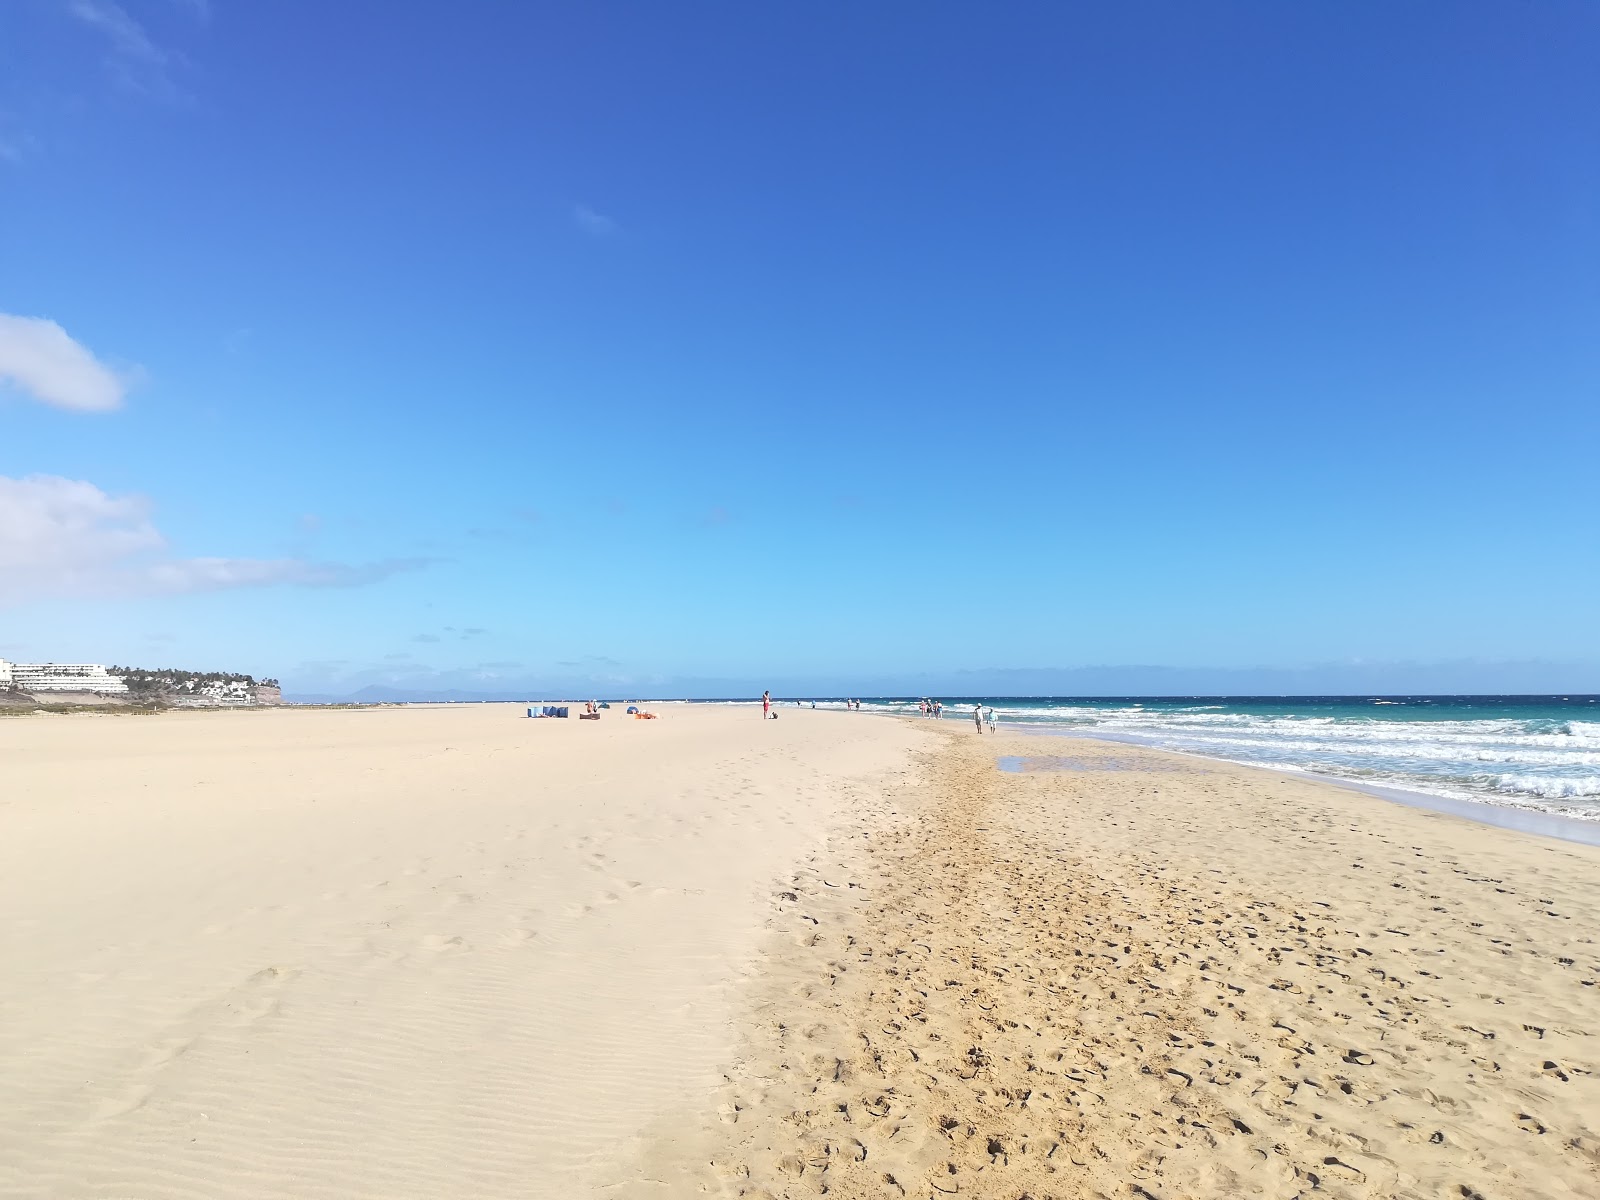 Foto di Spiaggia Gaviotas con una superficie del sabbia fine e luminosa